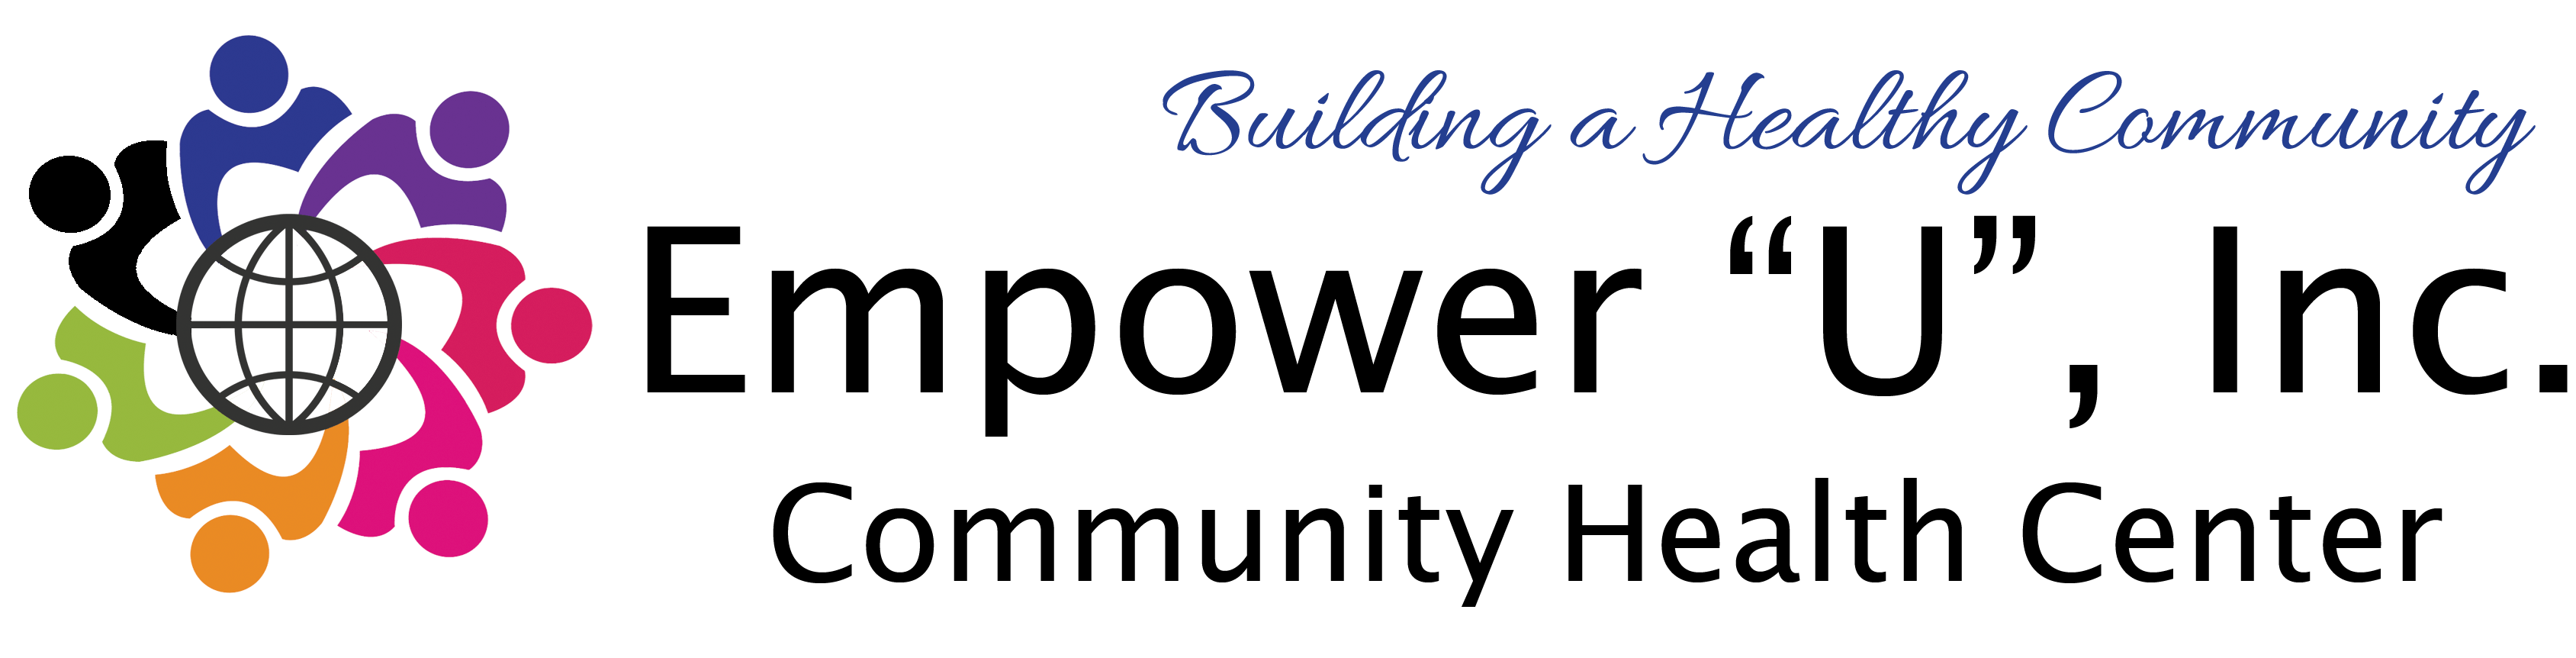 Empower U Logo - Empower U, Inc. Community Health Center